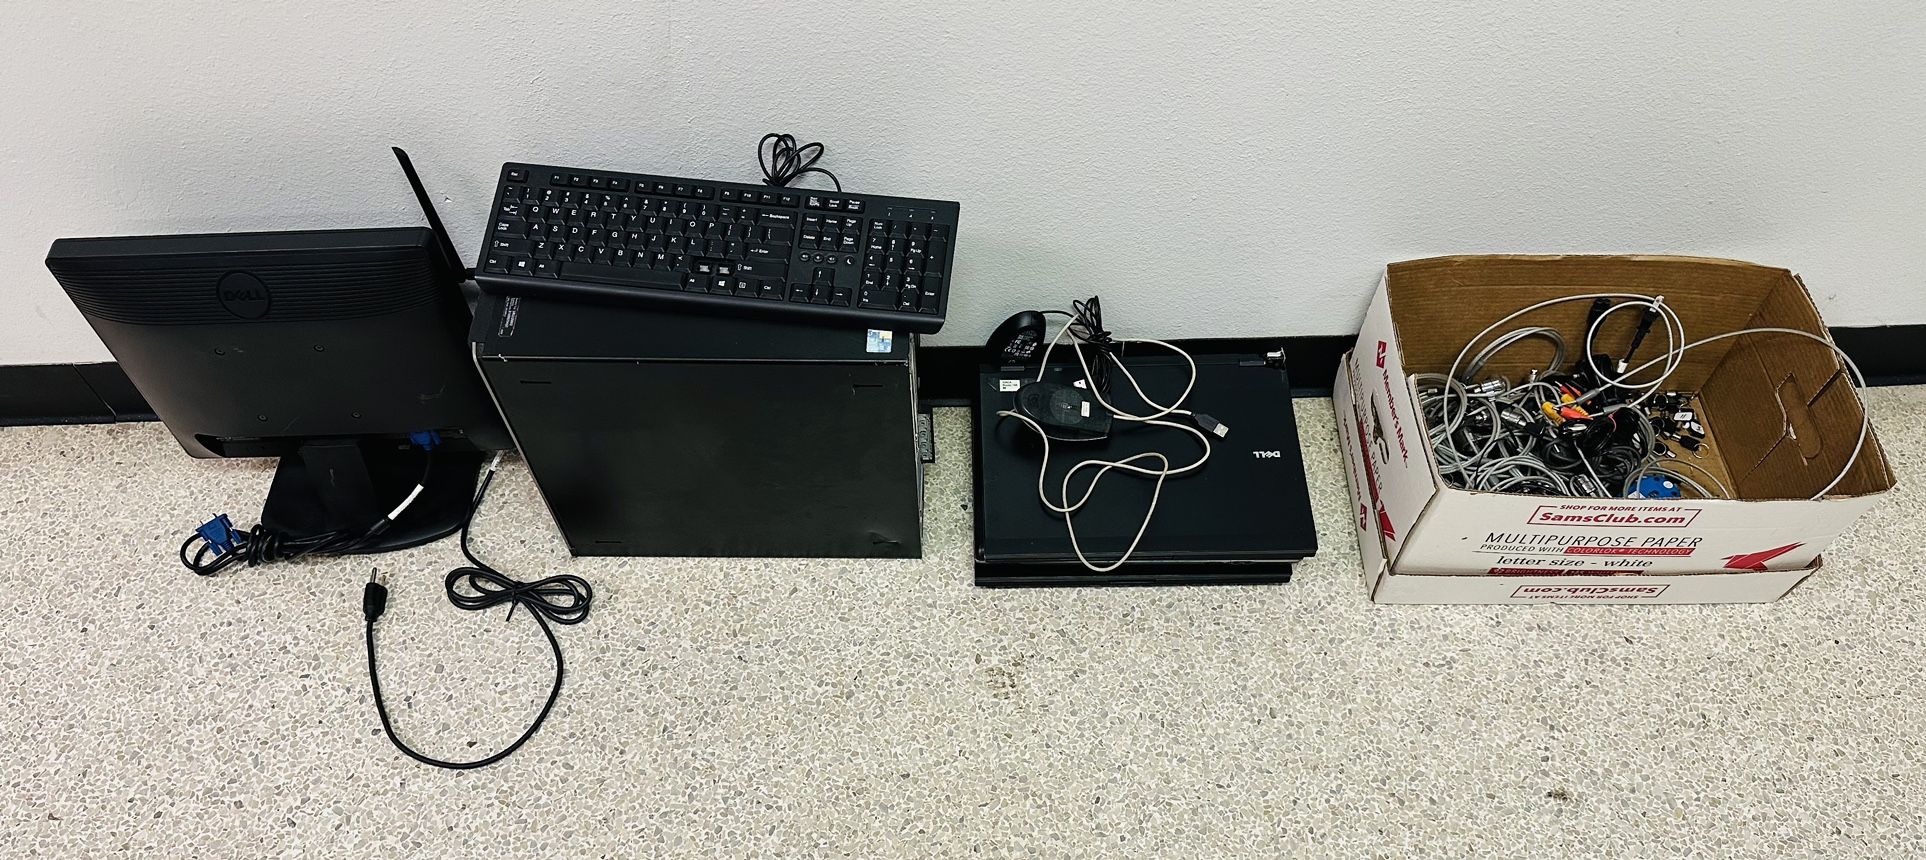 Dell Desktop, Laptop, Misc Equipment 